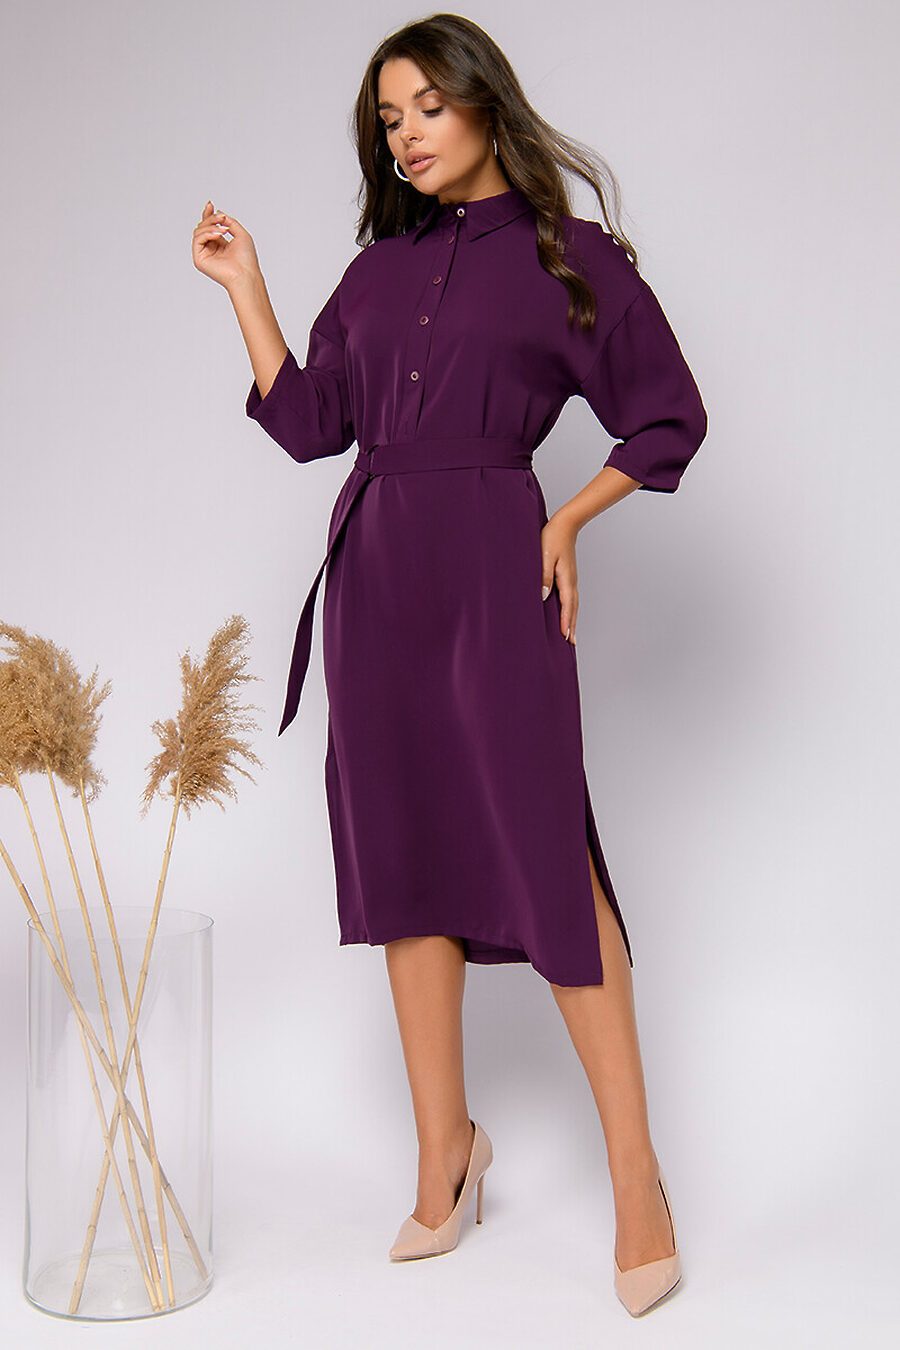 Платье для женщин 1001 DRESS 807709 купить оптом от производителя. Совместная покупка женской одежды в OptMoyo